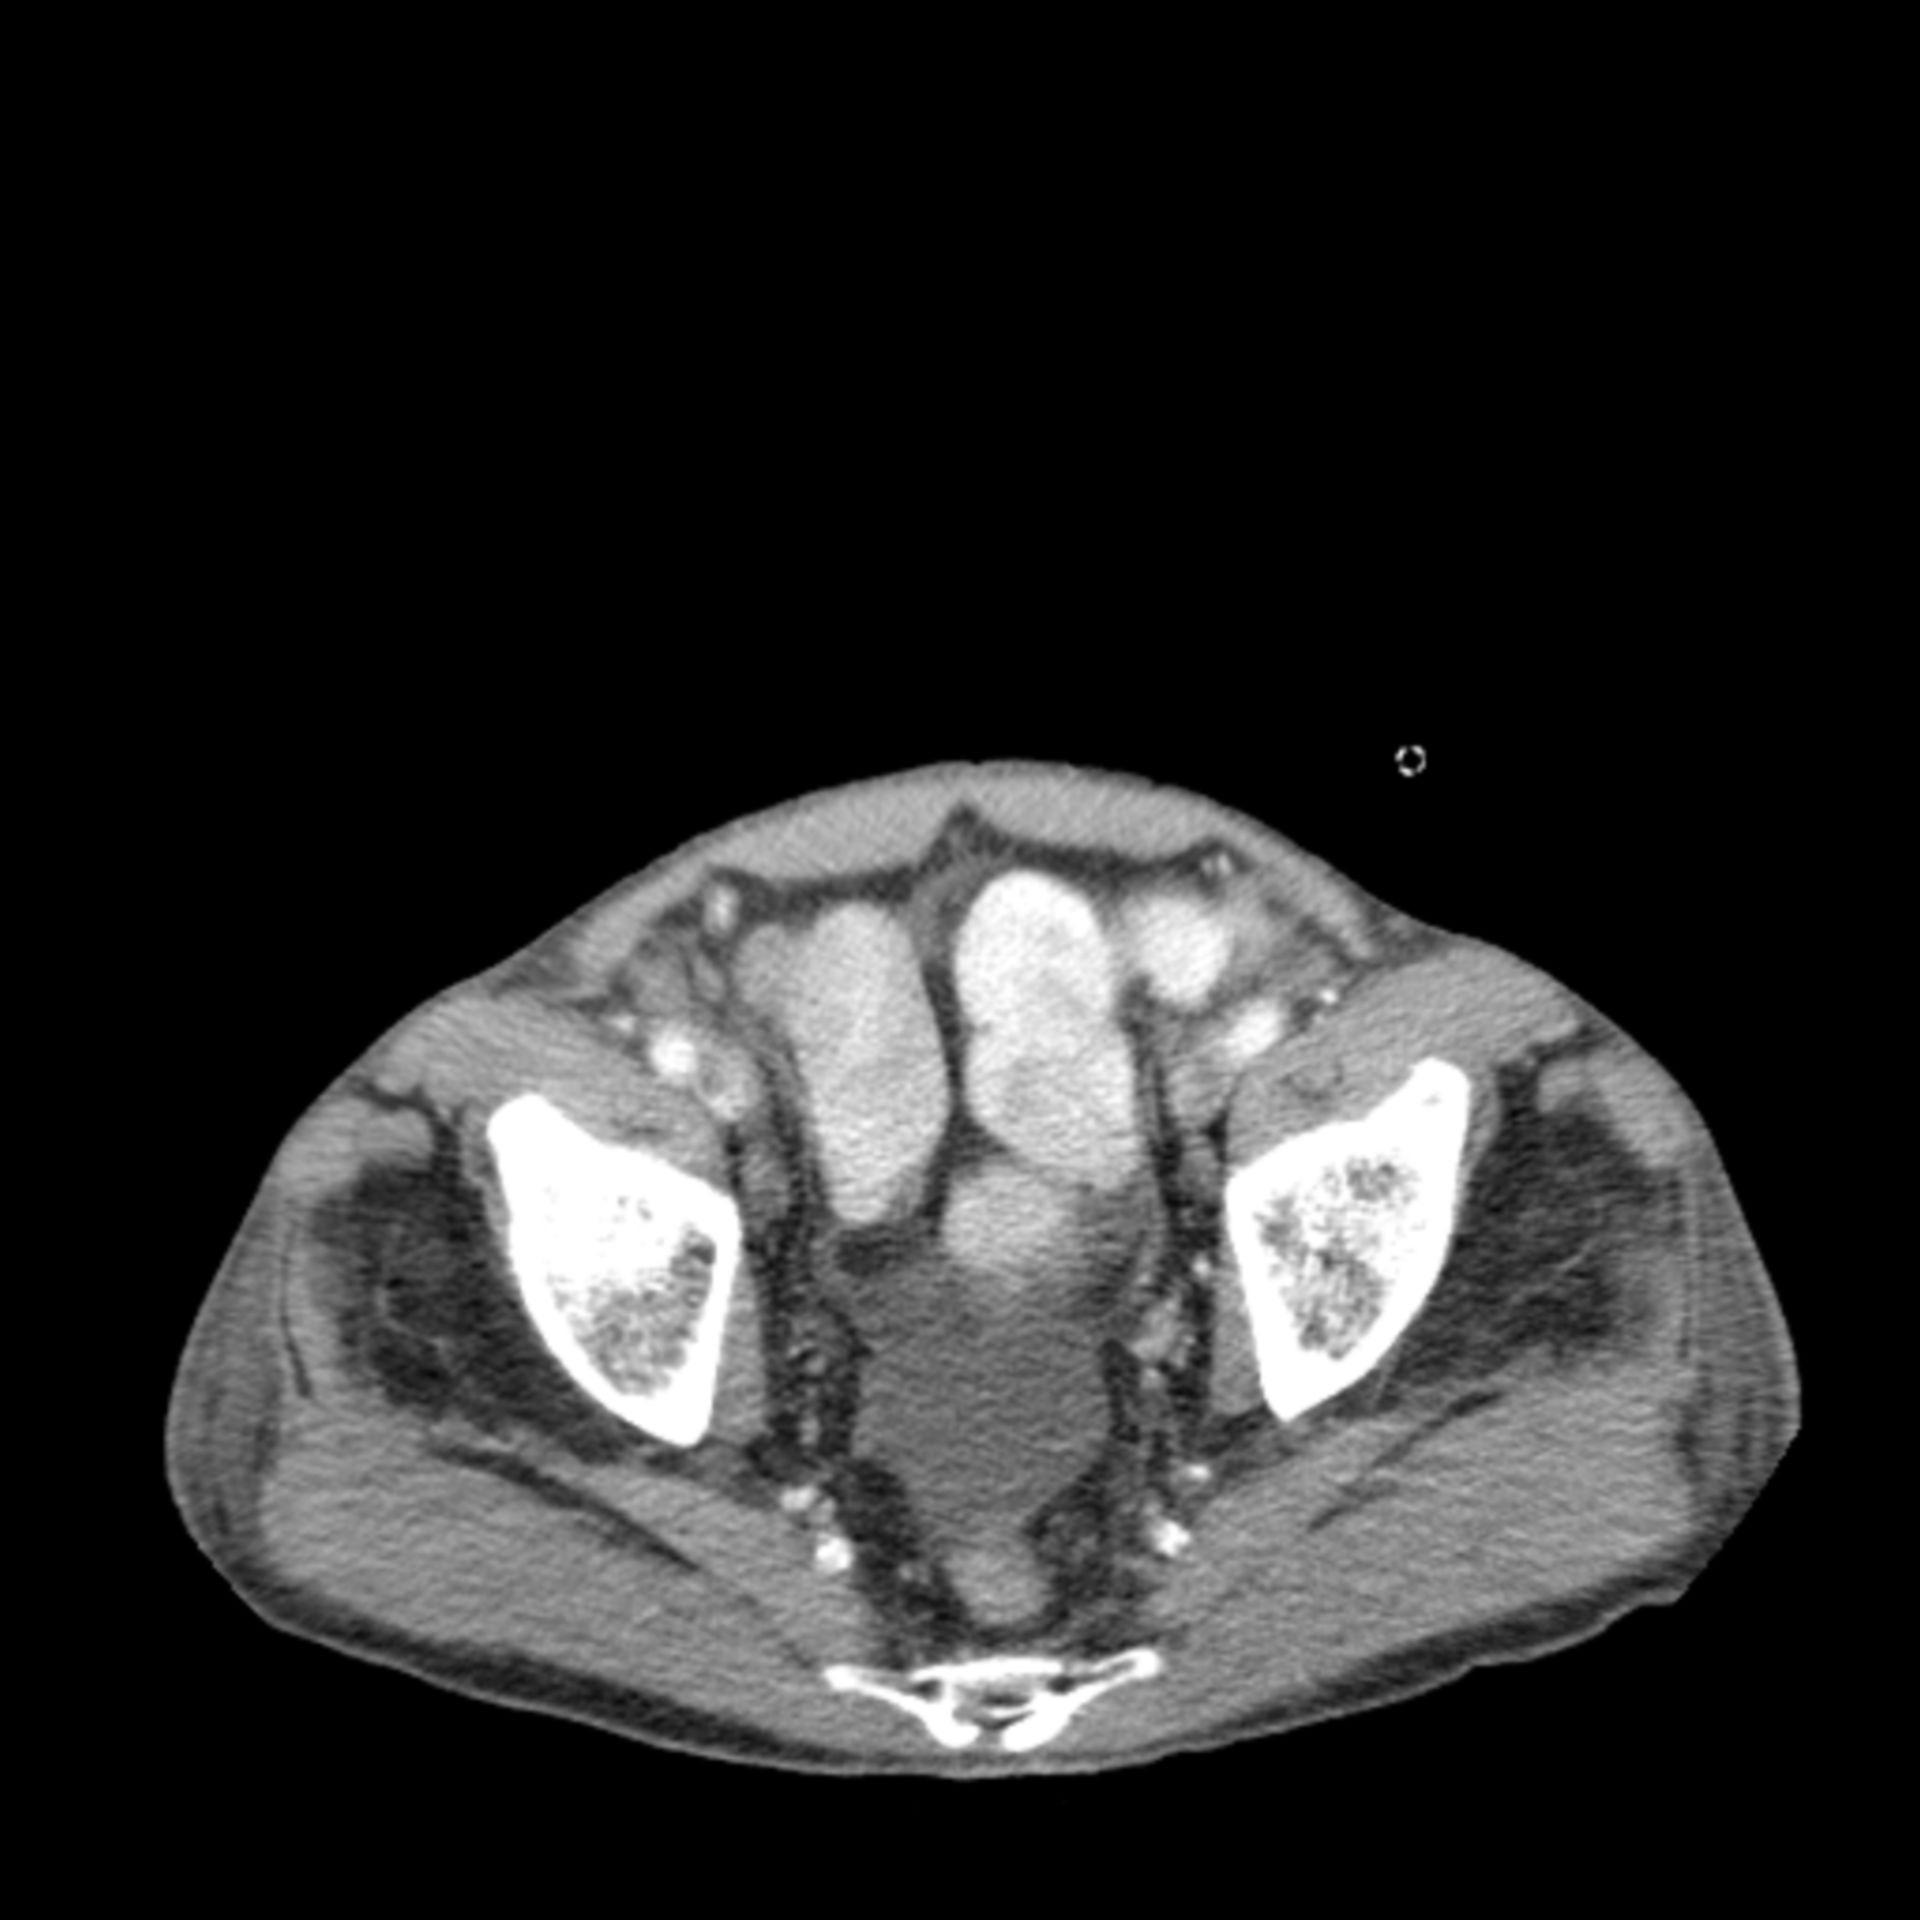 ct_tra9: CT des Abdomens in transversaler Ebene